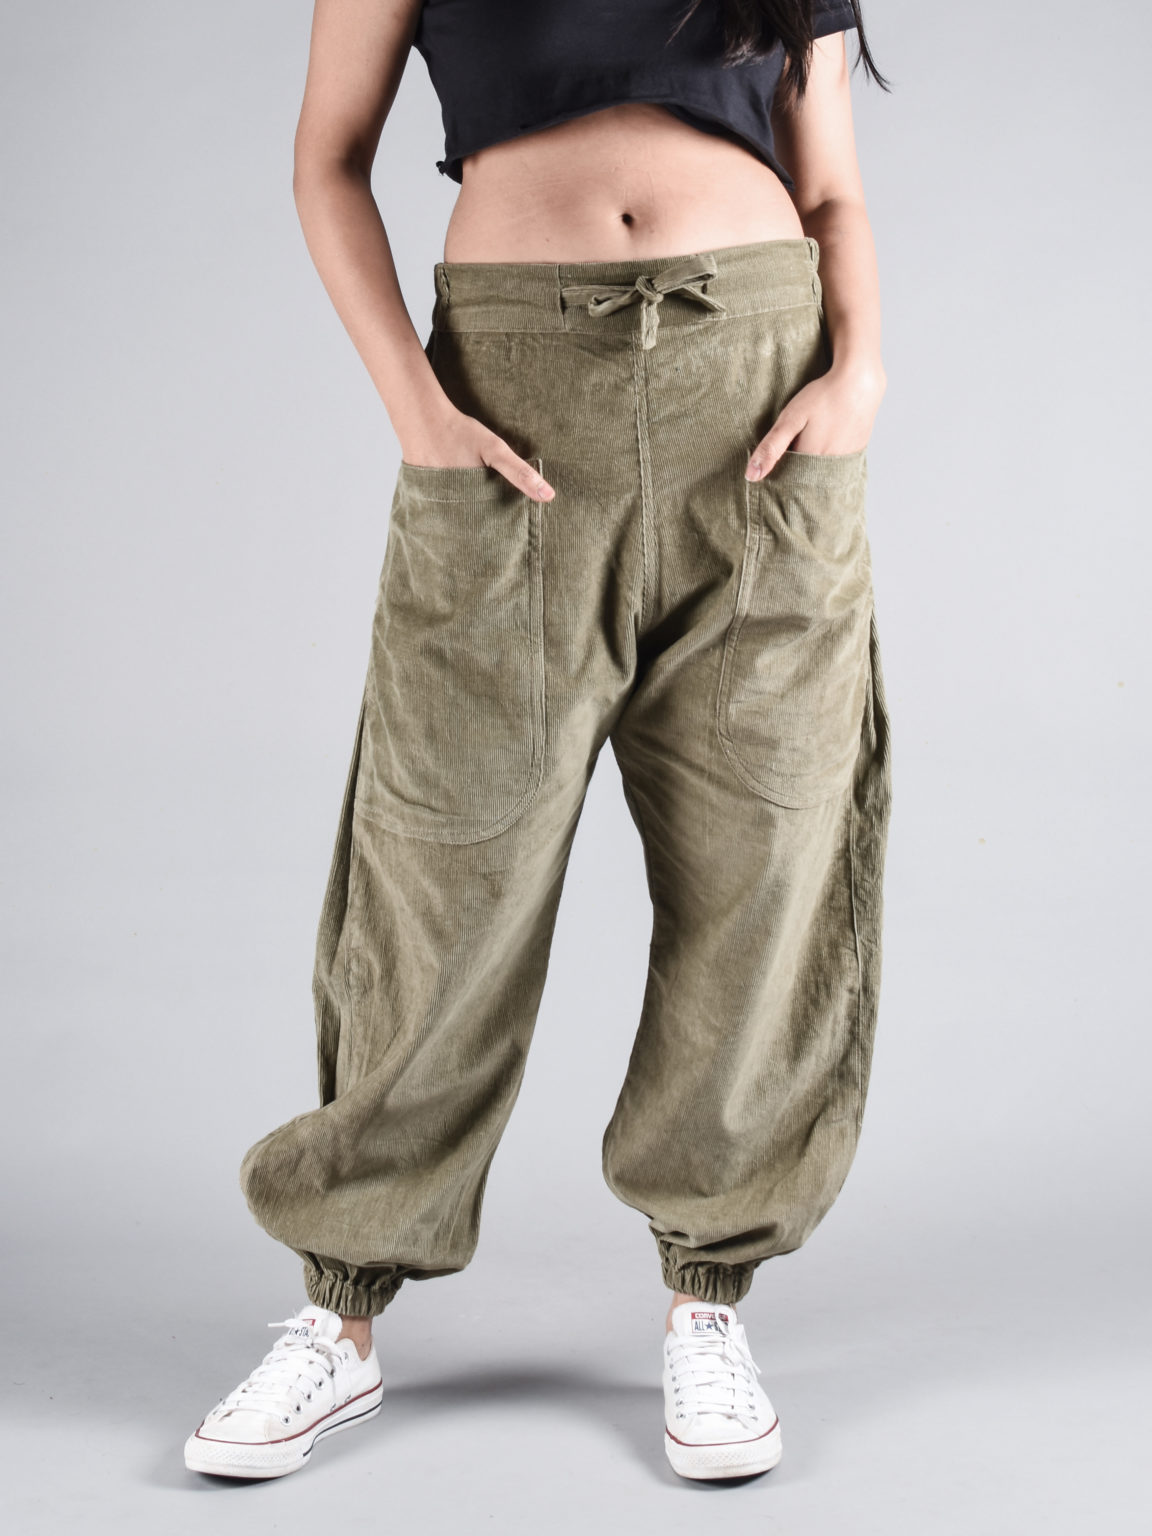 Hoppers Online - Buy Harem Pants for Men & Women India